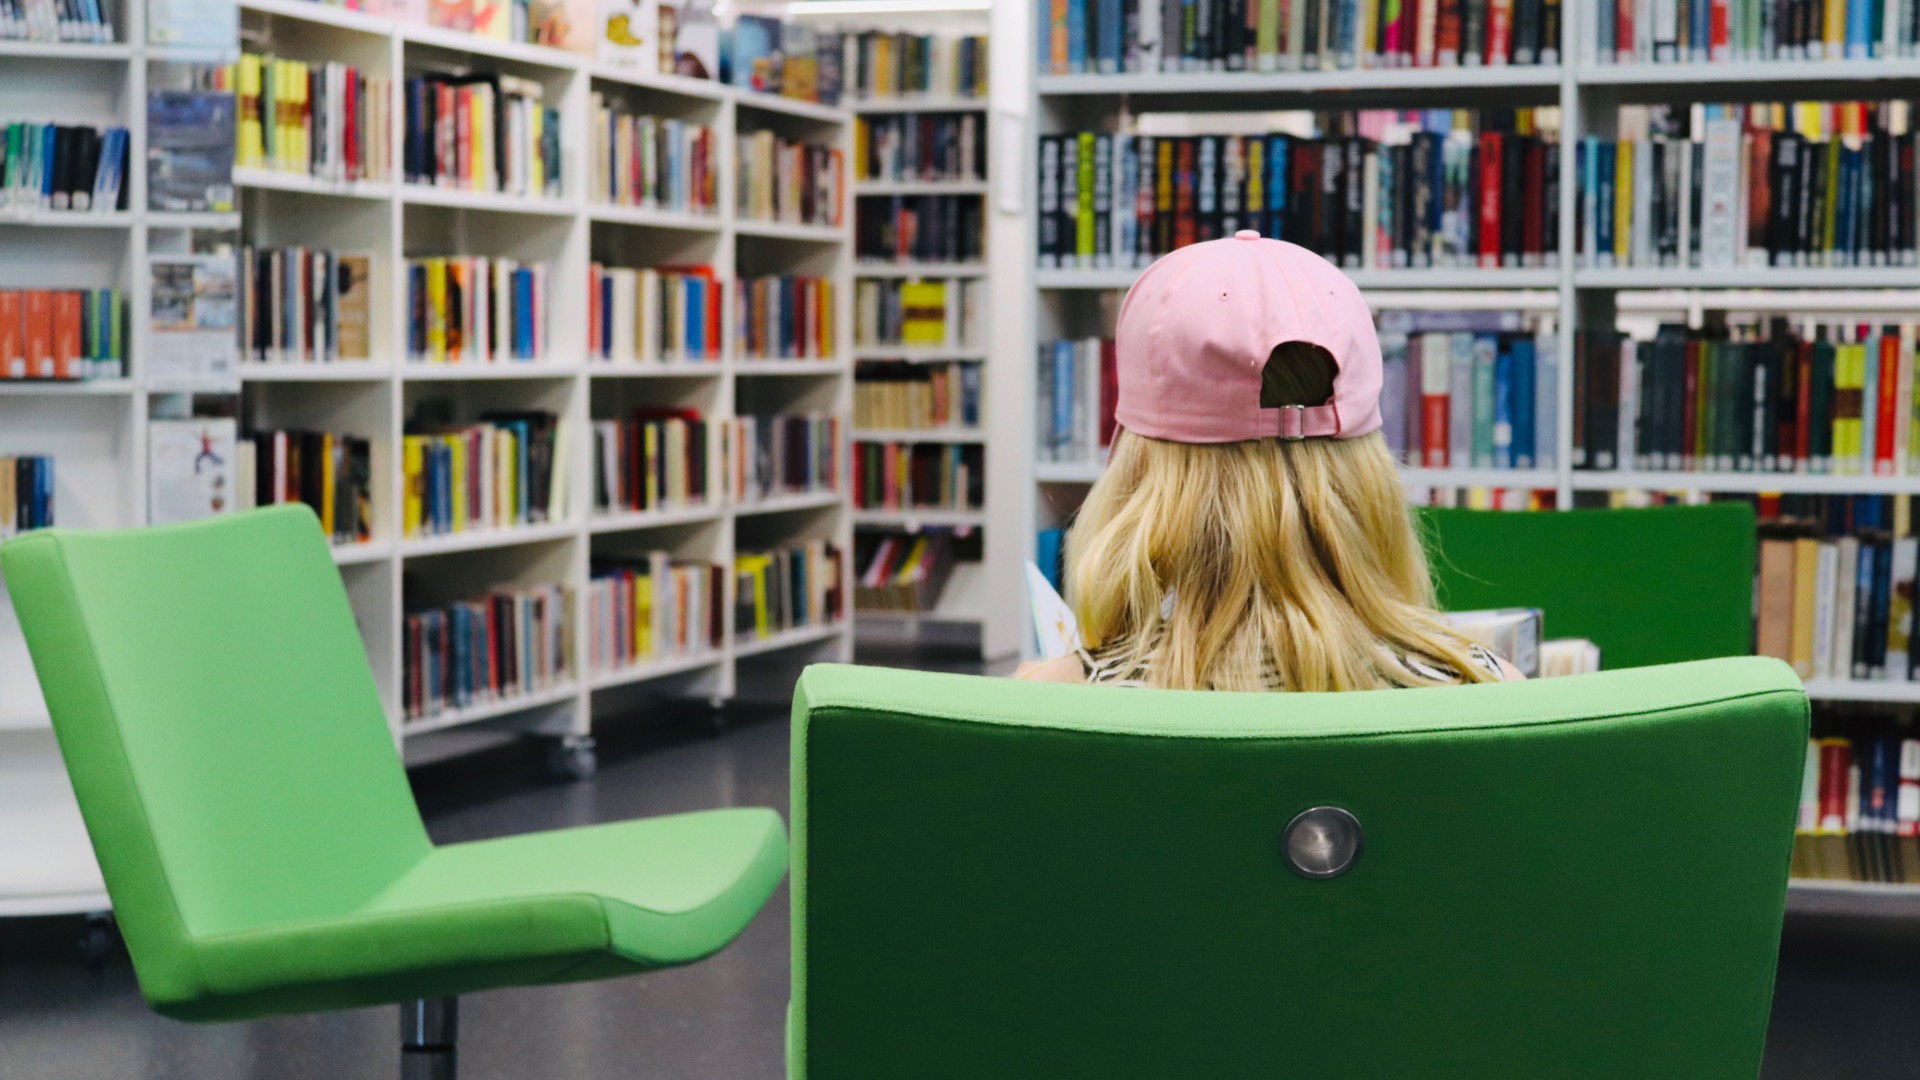 Kuvassa asiakas istuu nojatuolissa Parkanon kirjastossa. Takana näkyy kirjaston kokoelmahyllyjä, joissa kirjoja.